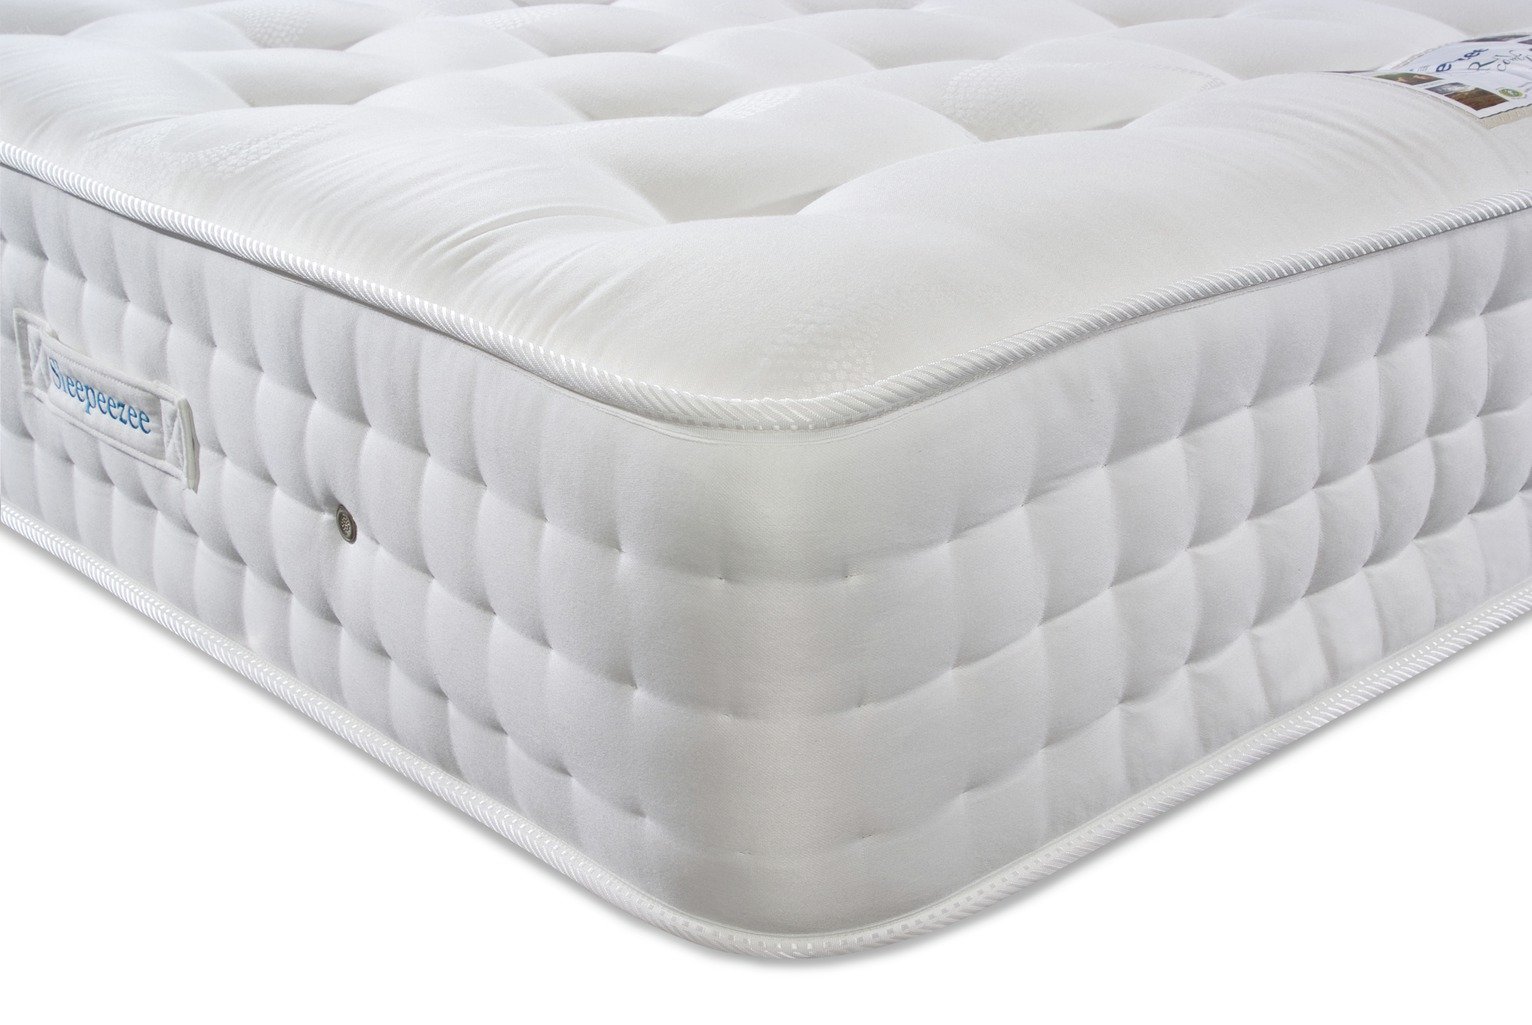 sleepeezee venetian mattress review